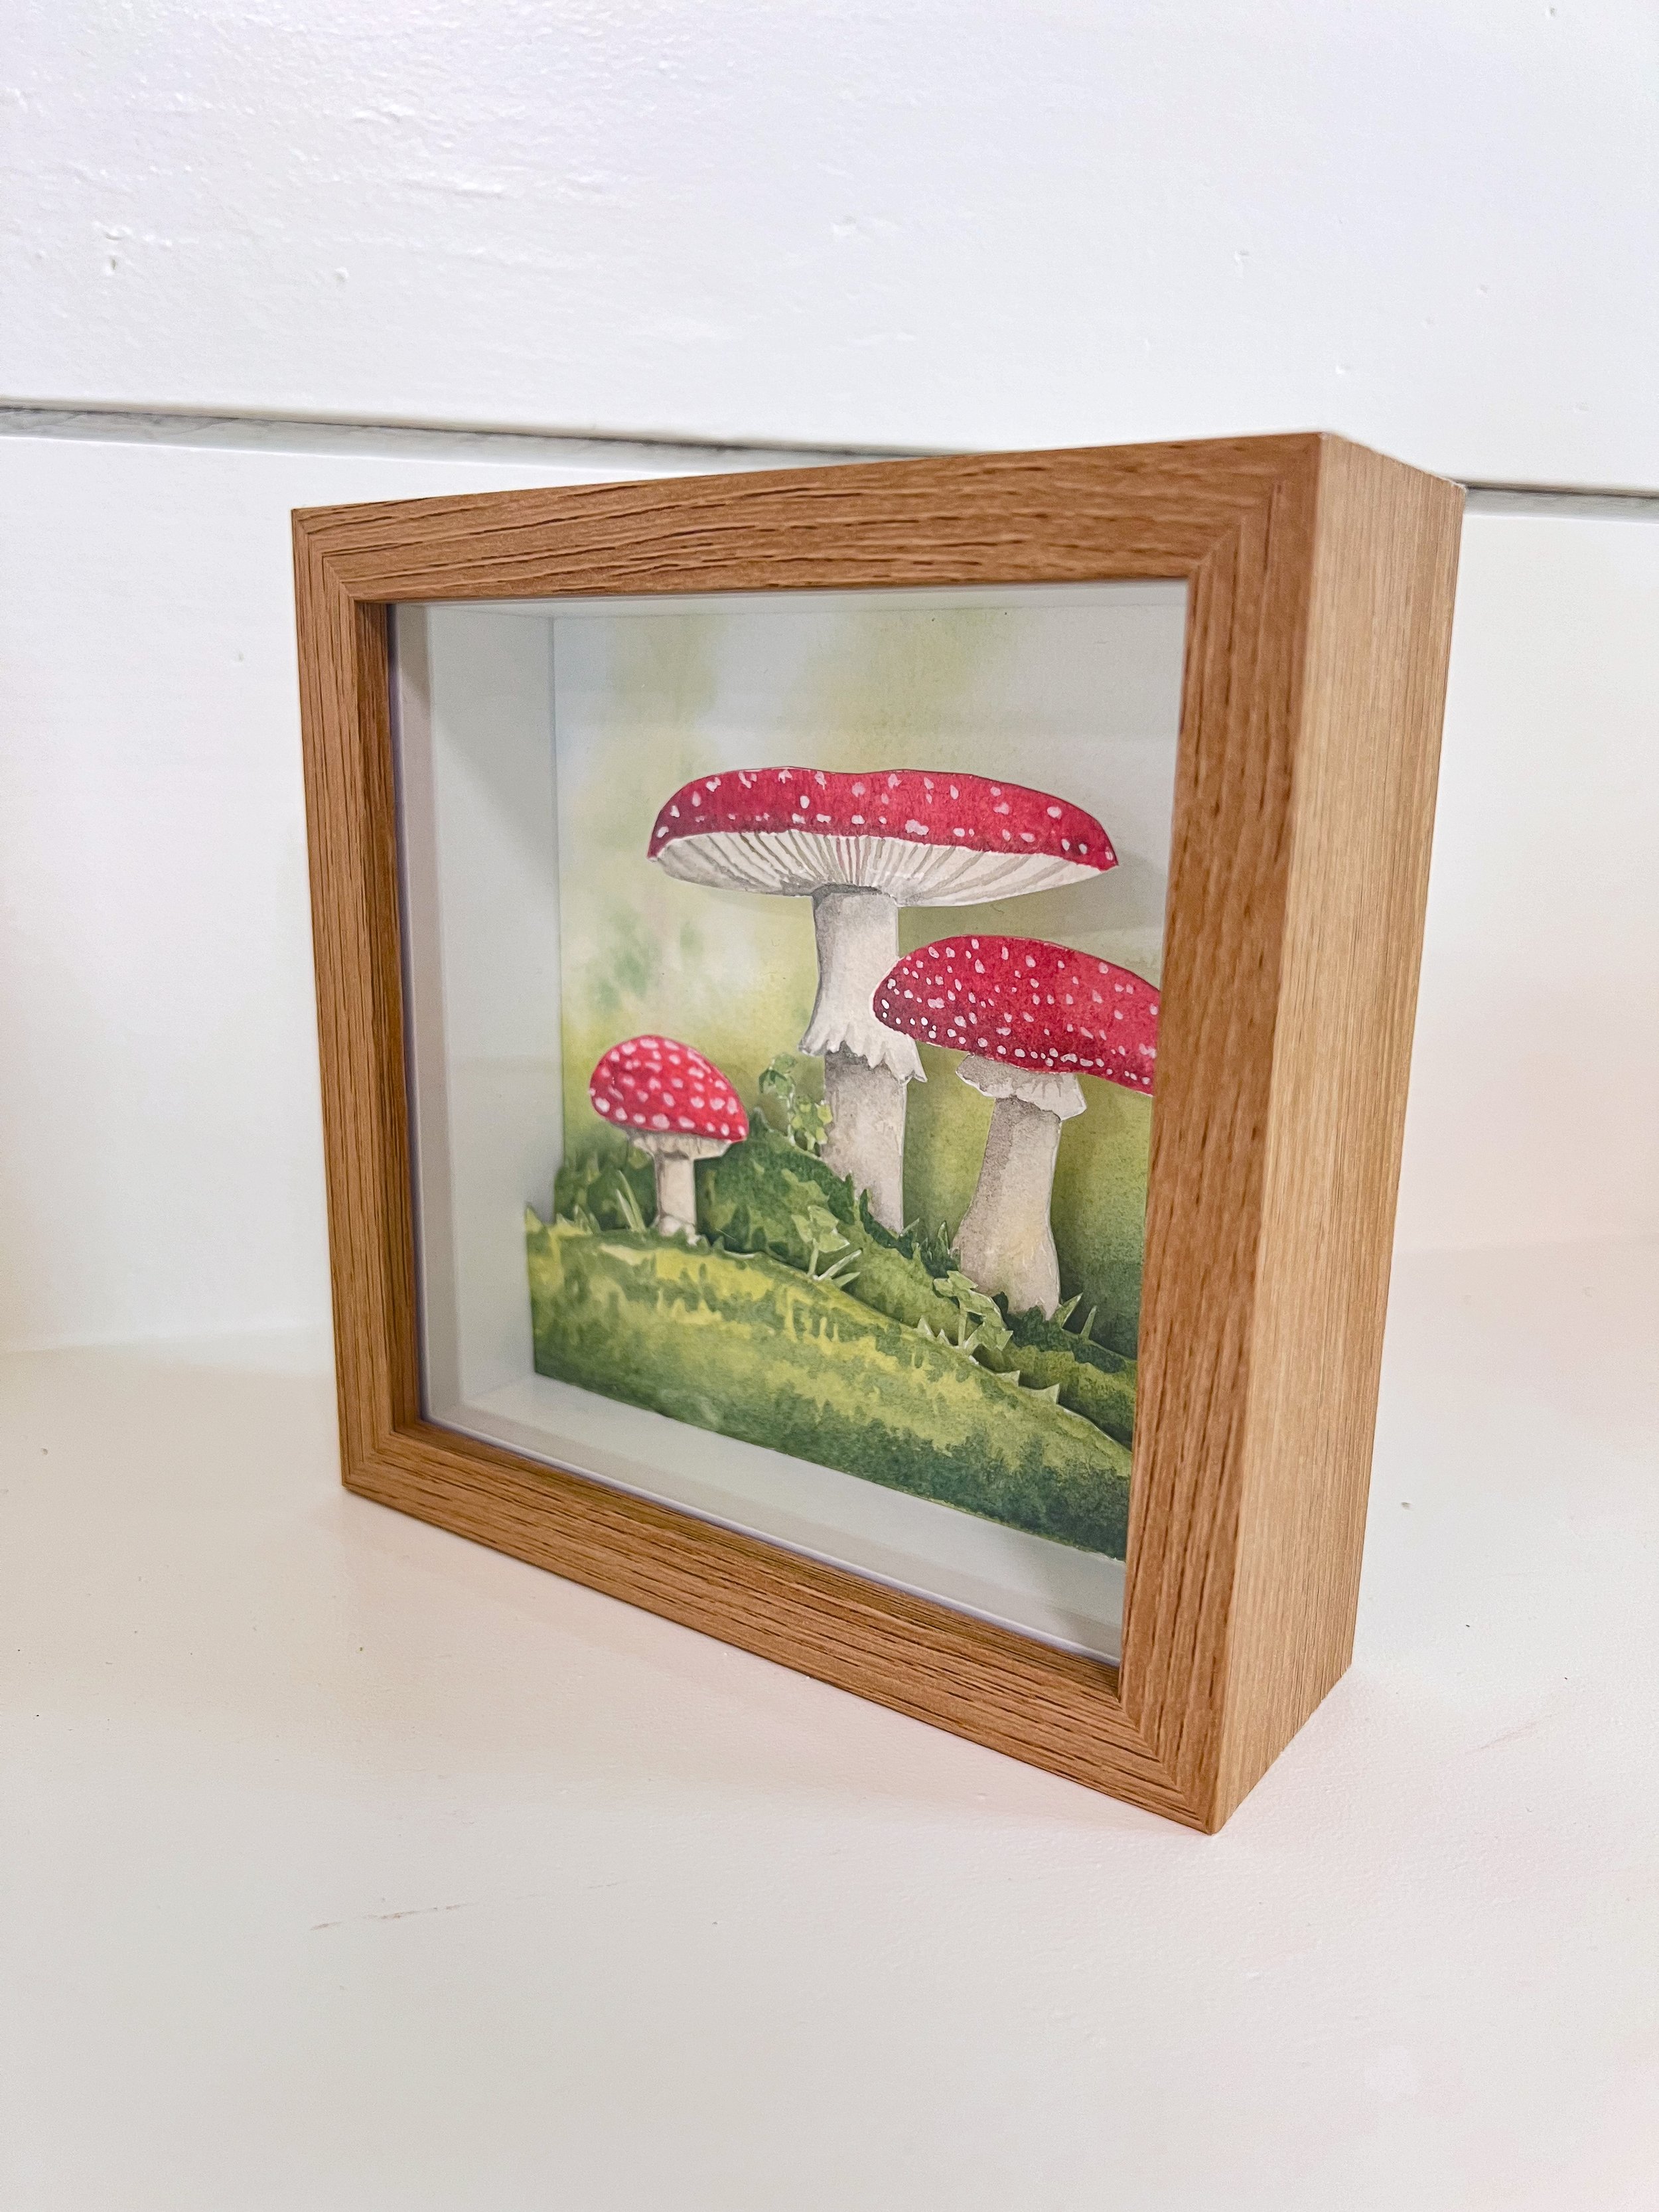 Mushroom Diorama wkshp 4.jpg